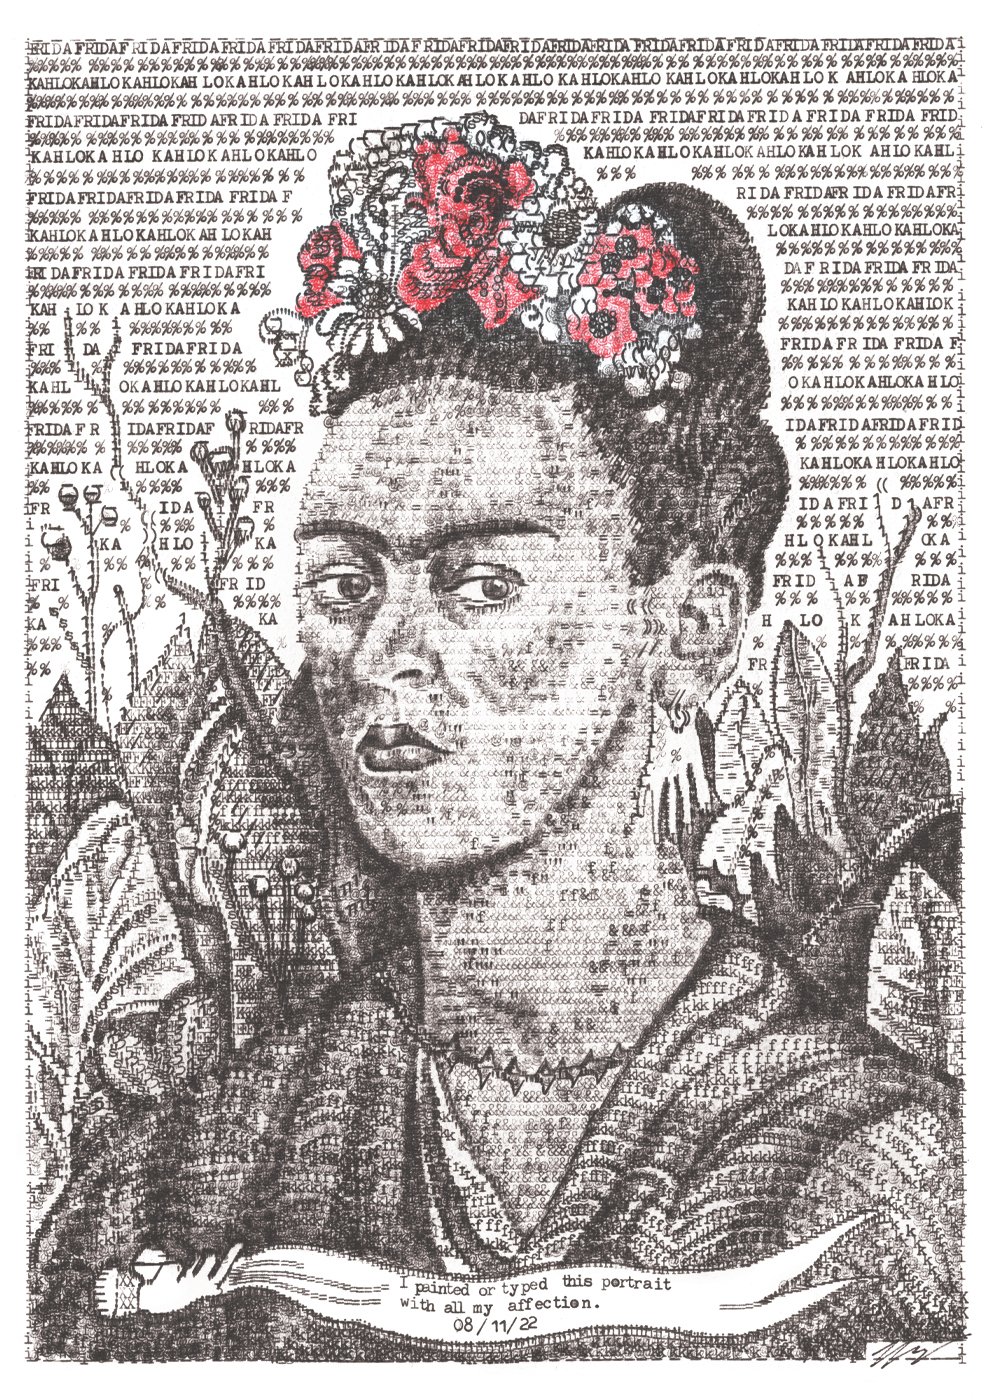 Image of Frida Kahlo Signed Typewriter Artwork by James Cook 